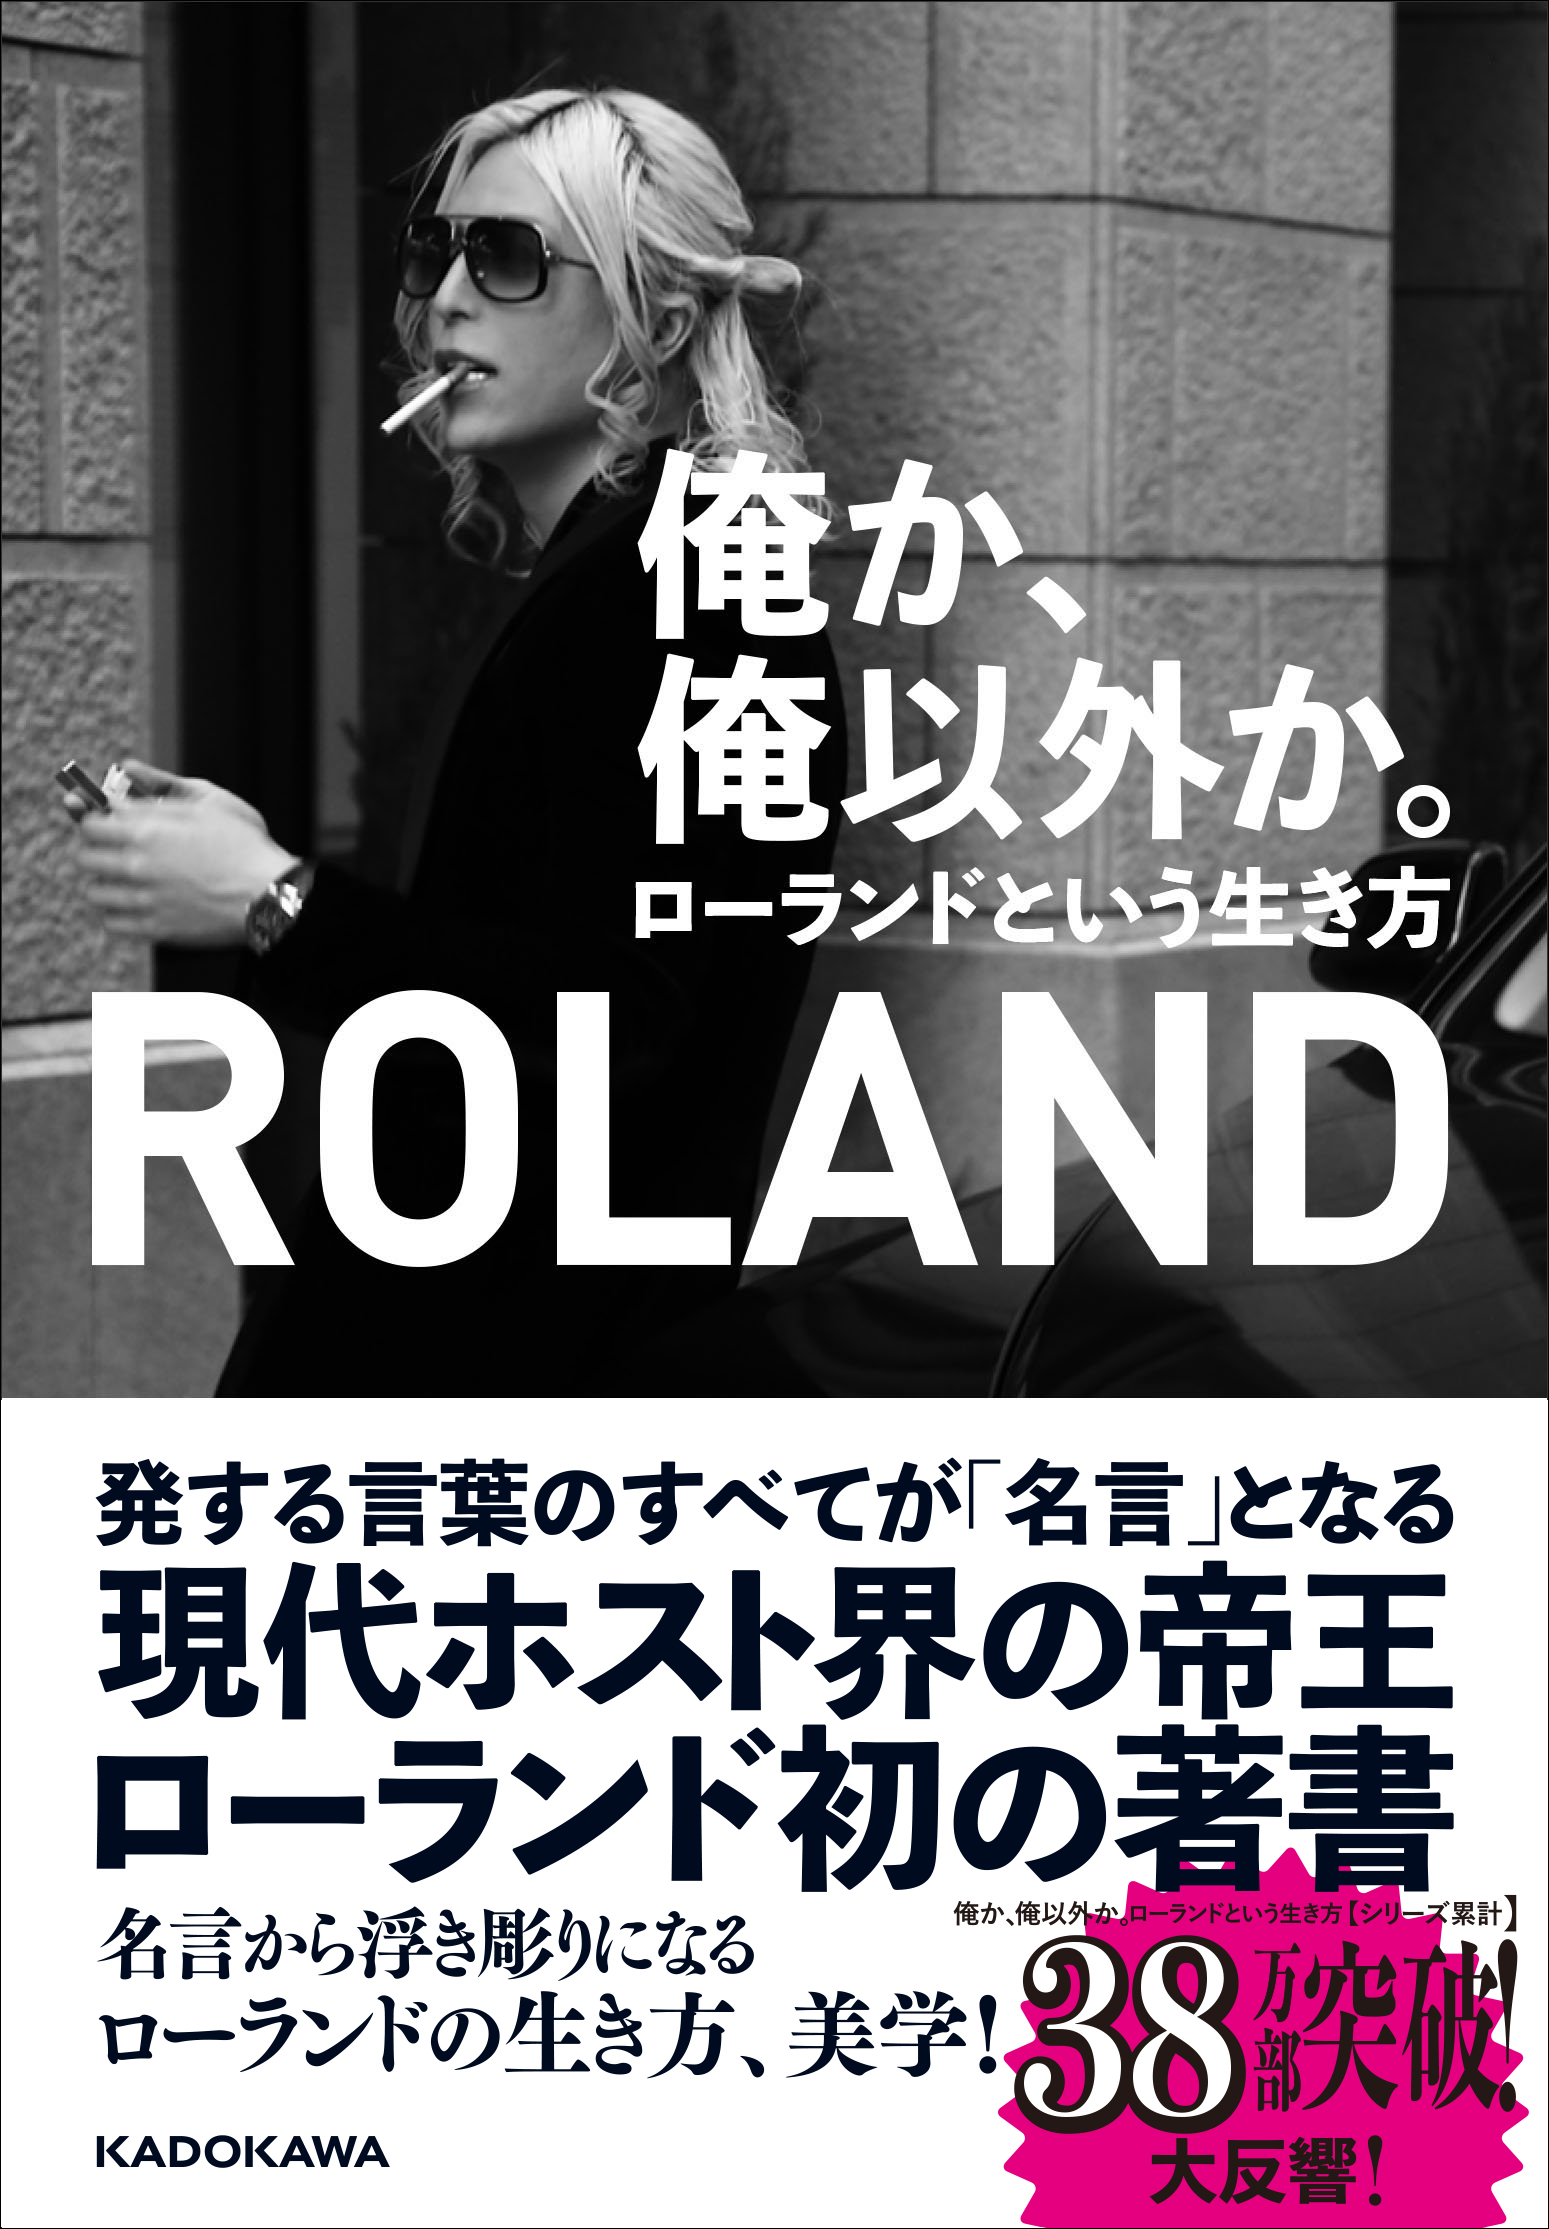 俺か、俺以外か。　[生活・実用書]　ローランドという生き方」ROLAND　KADOKAWA